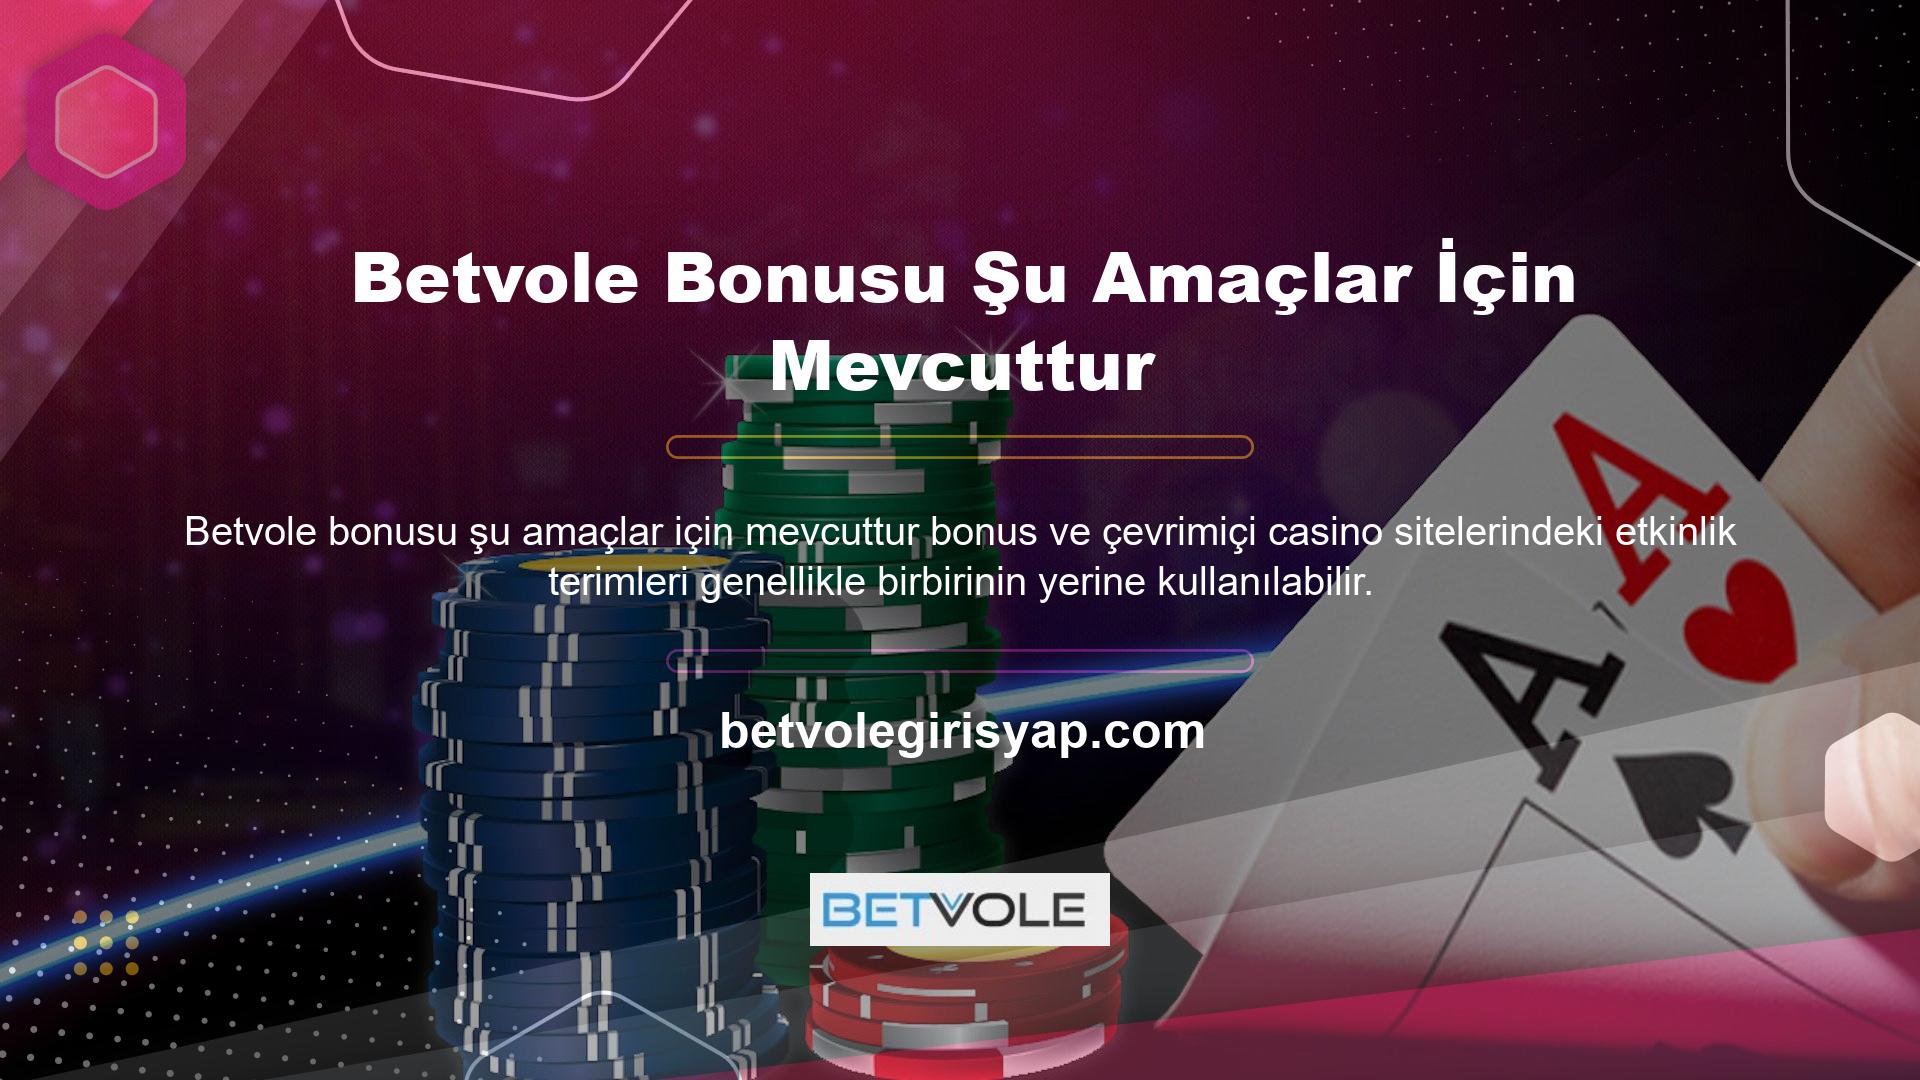 Betvole, mükemmel hizmet ve bonusların yanı sıra büyüleyici kampanyalara sahip bir sitedir